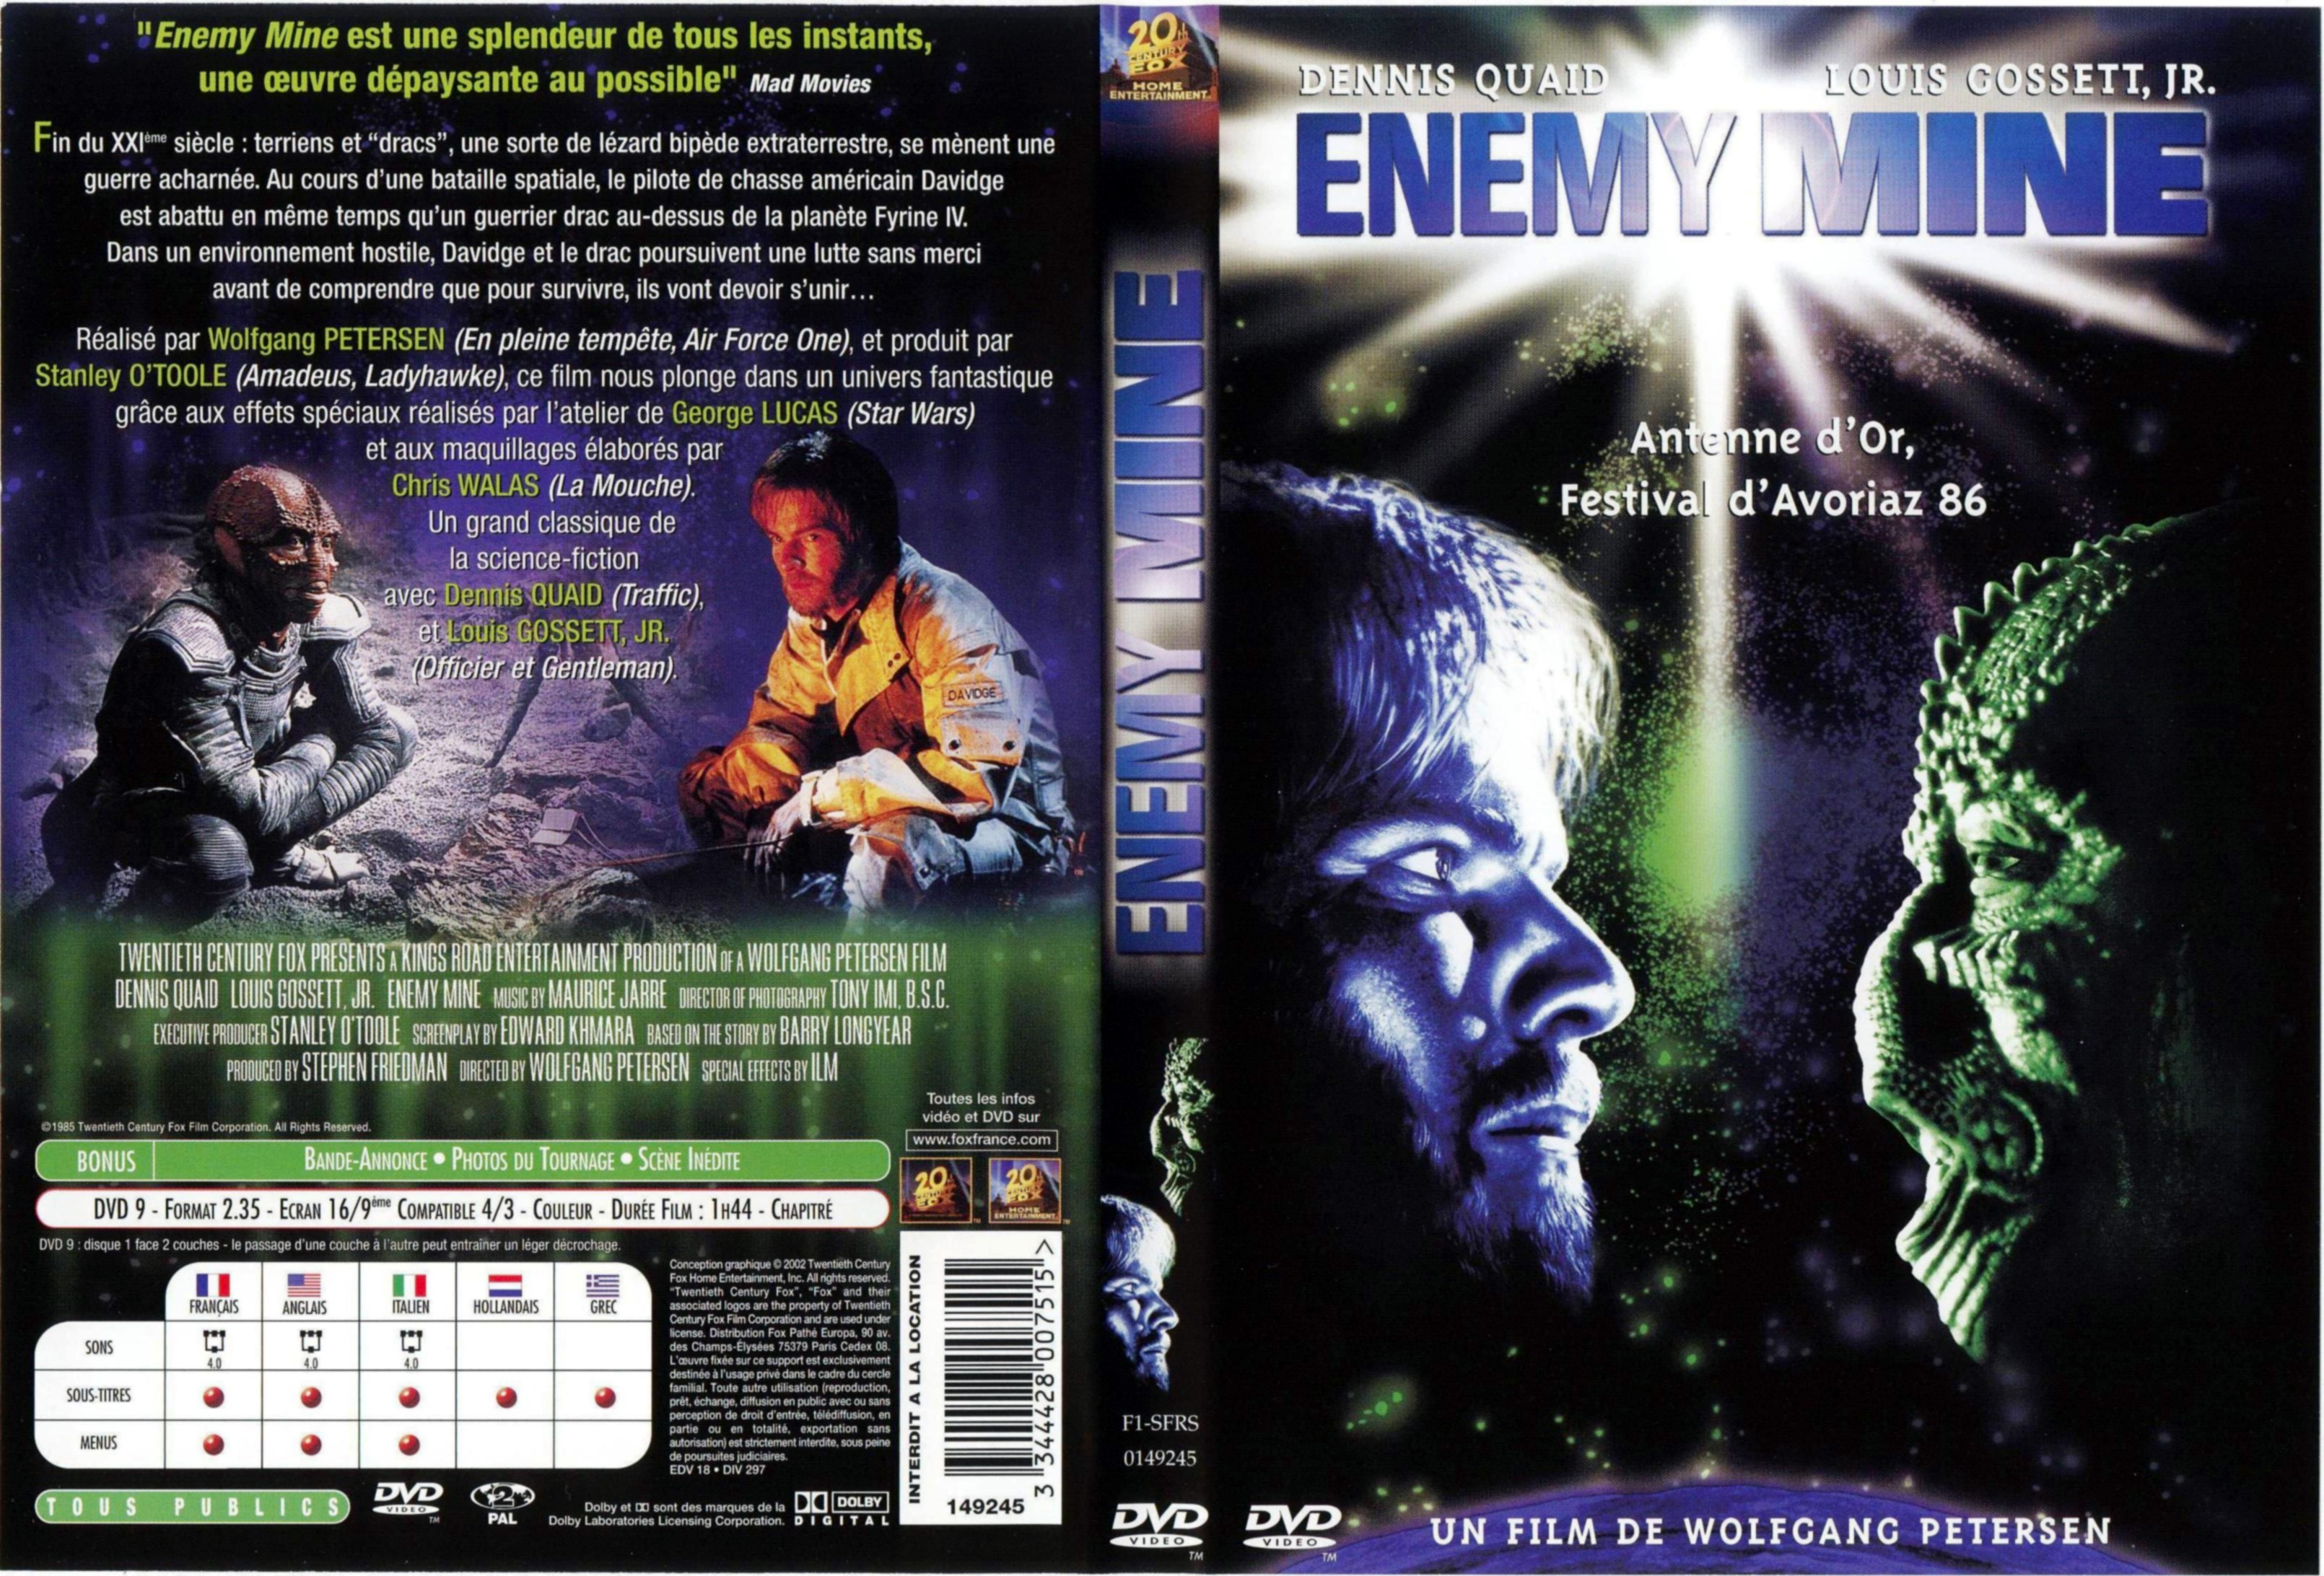 Jaquette DVD Enemy Mine v2